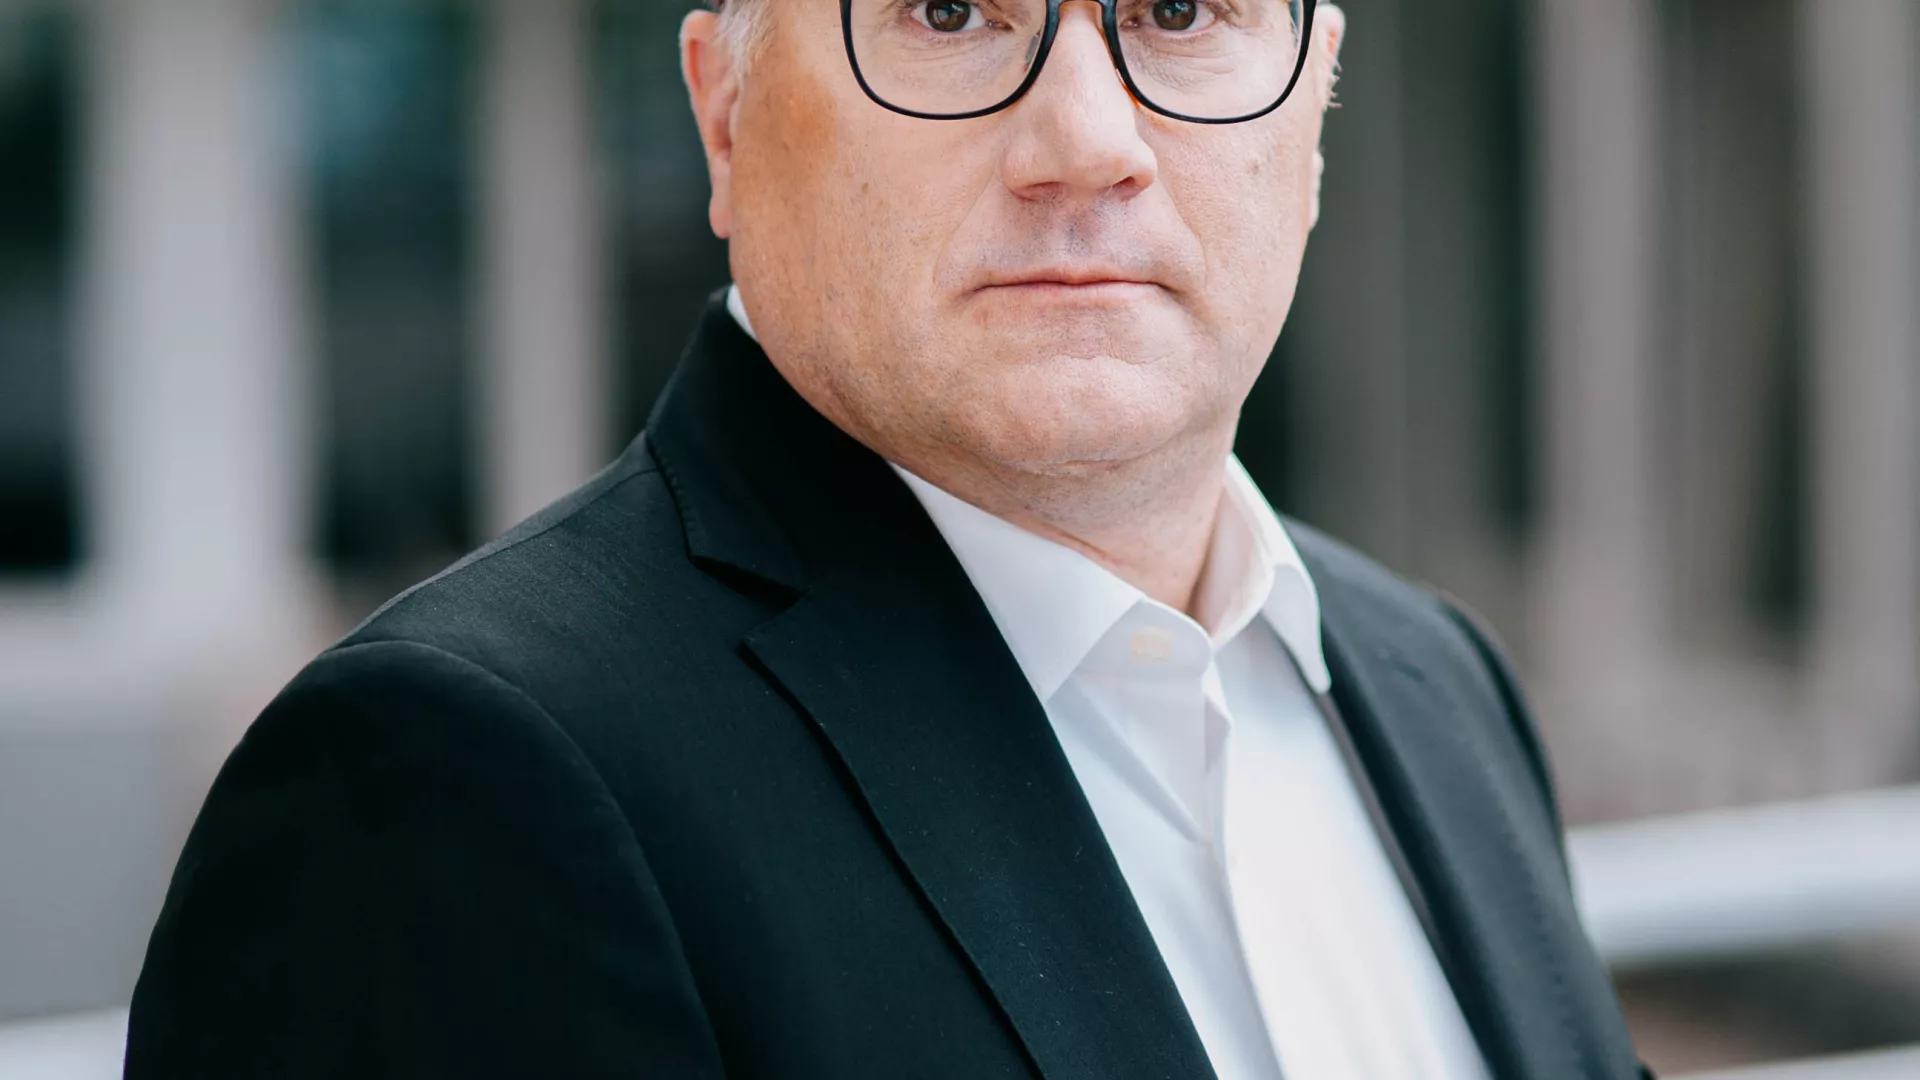 Thomas Augat (CFO der SENEC GmbH) in schwarzem Anzug